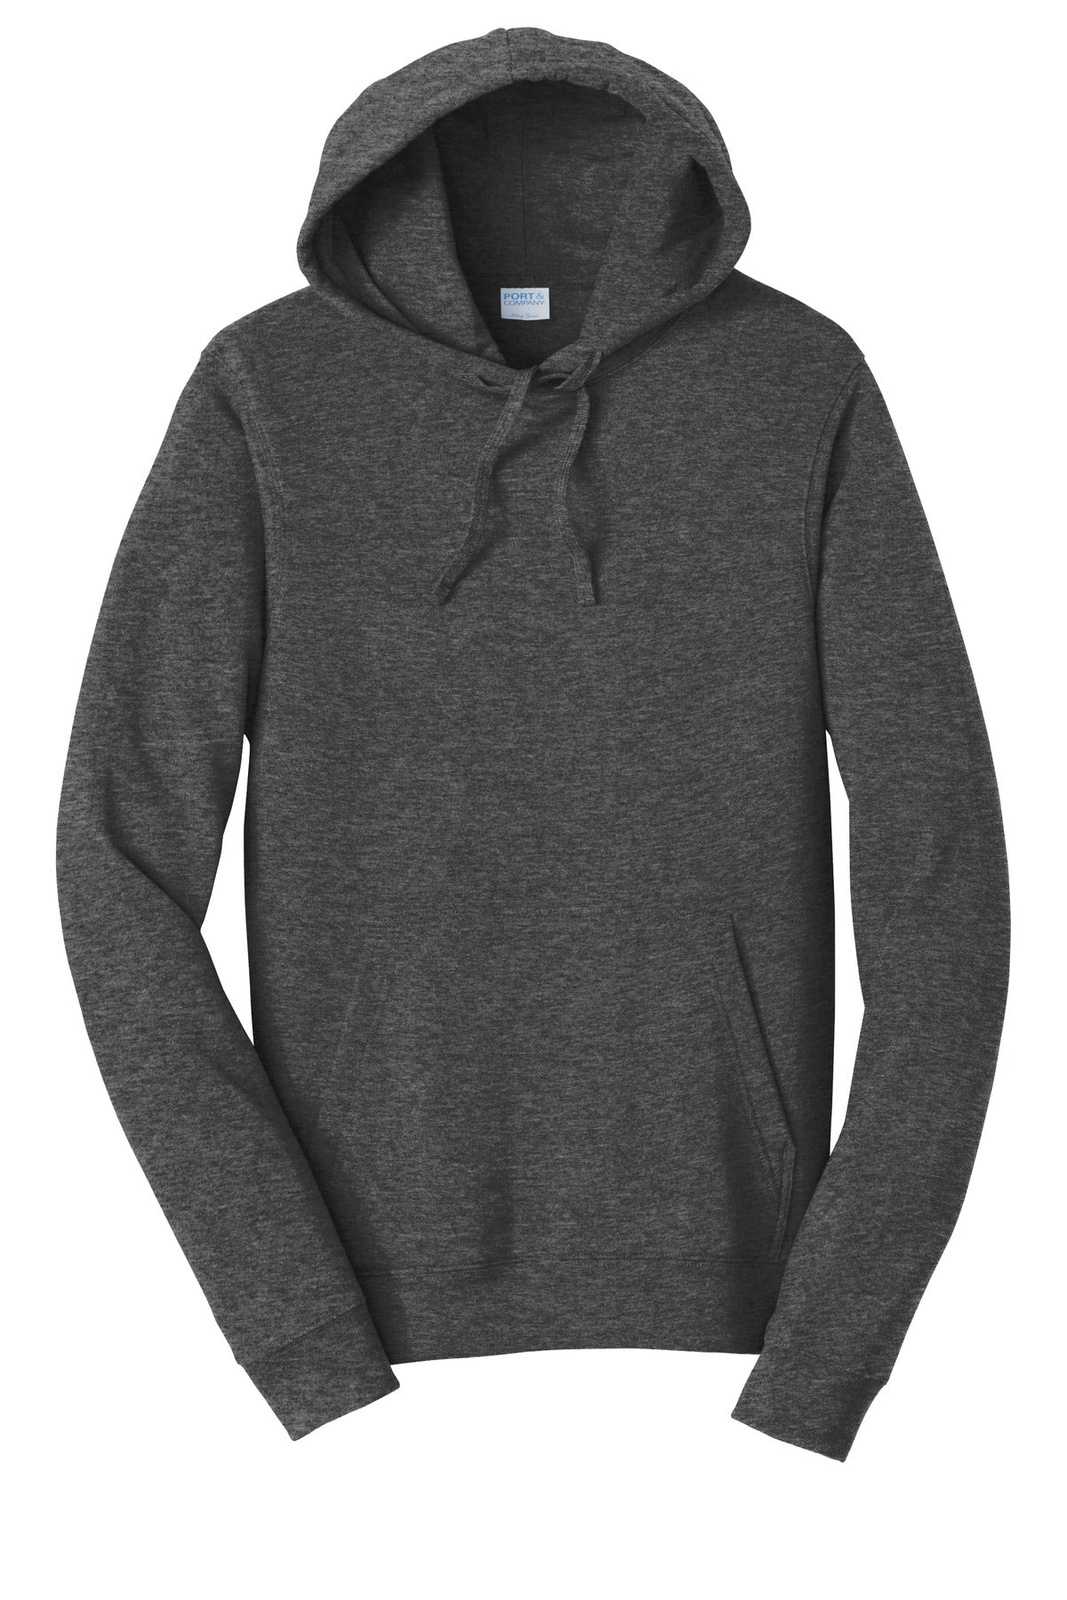 Port &amp; Company PC850H Fan Favorite Fleece Pullover Hooded Sweatshirt - Dark Heather Gray - HIT a Double - 5